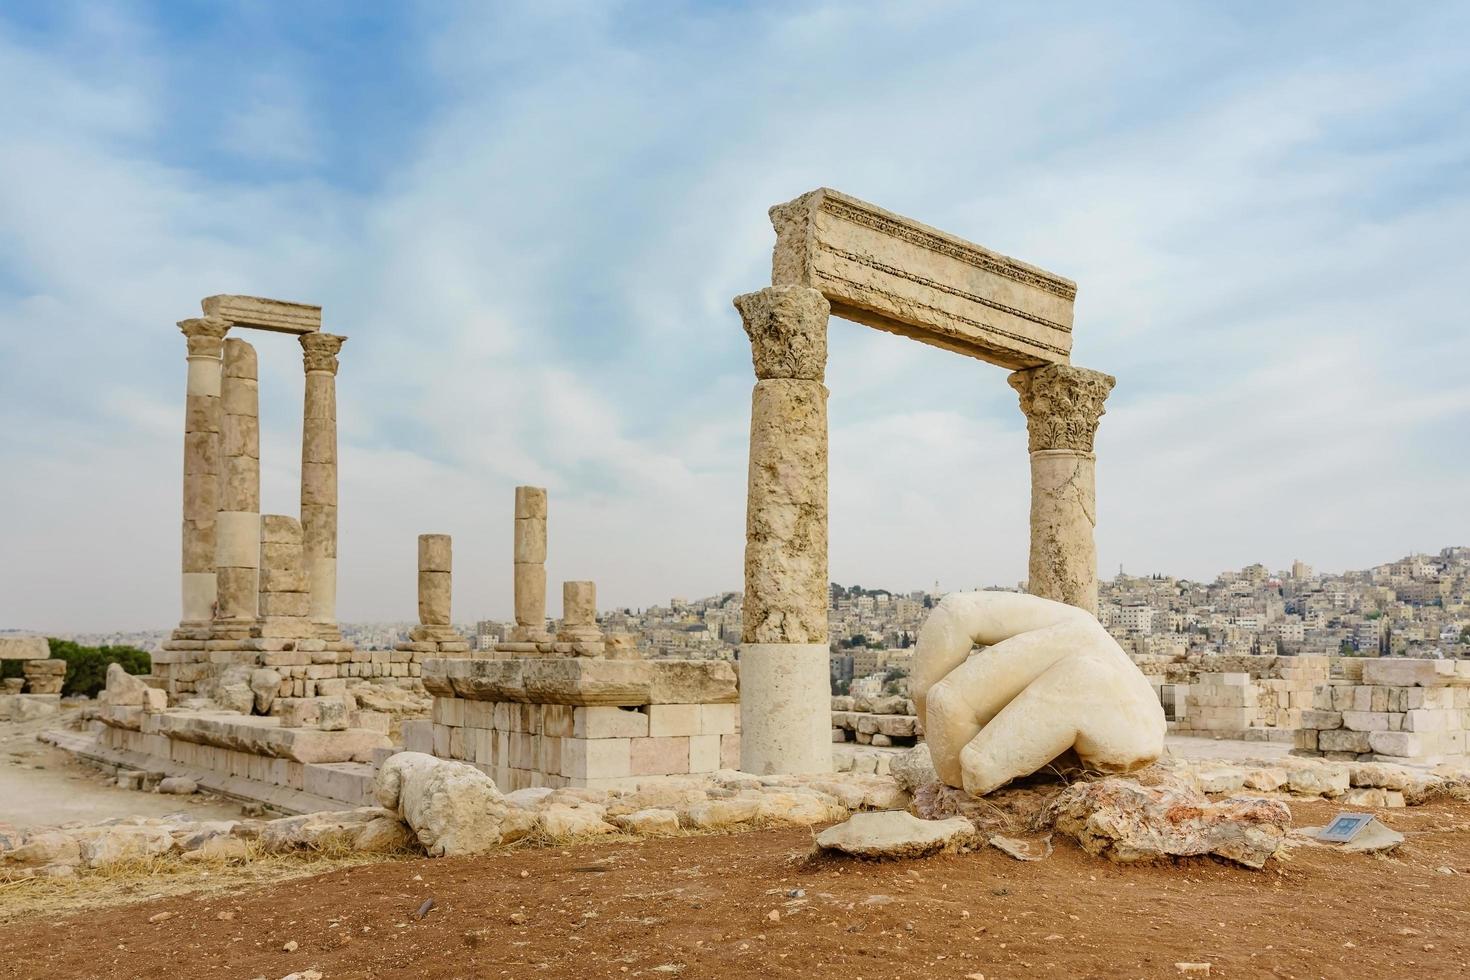 Templo de Hércules, columnas corintias romanas en la colina de la ciudadela en Ammán, Jordania foto